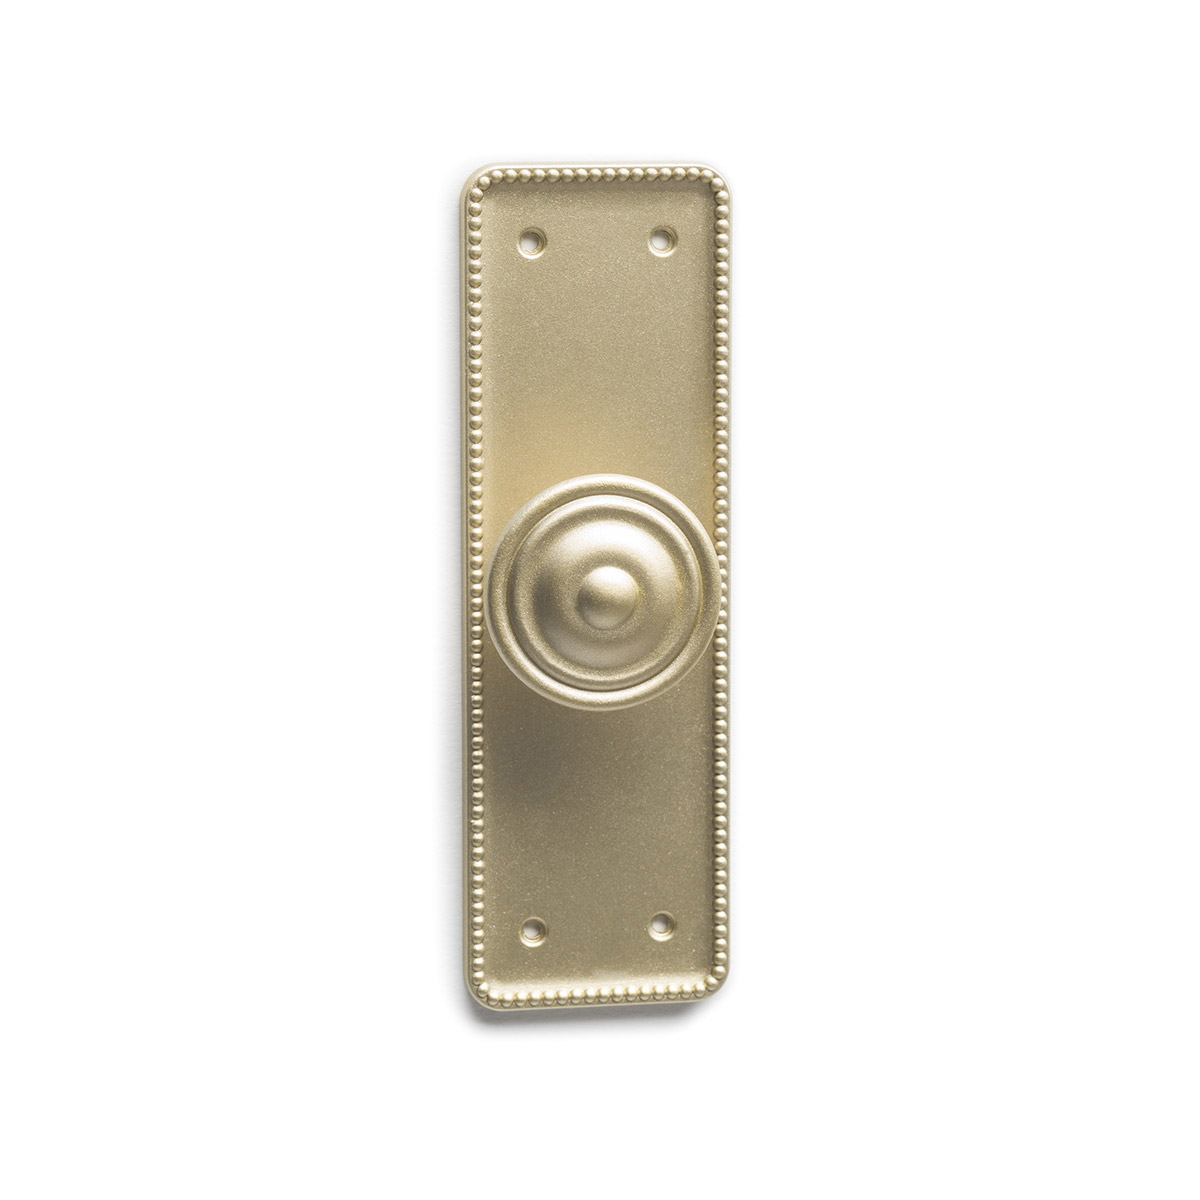 Bouton de plaque en zamak avec finition en or mat, dimensions: 110x38x26mm